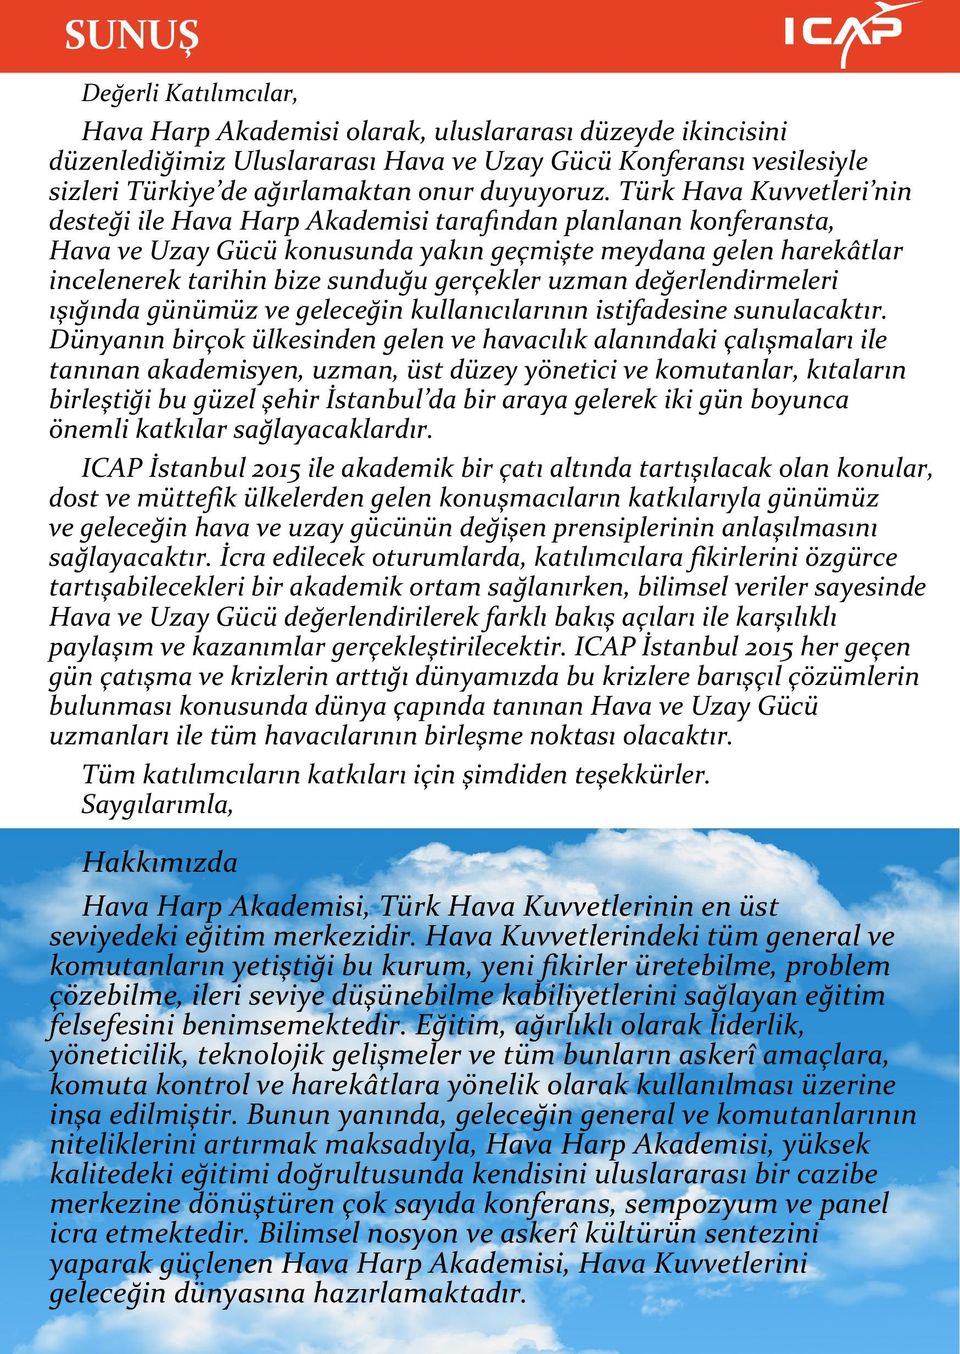 Türk Hava Kuvvetleri nin desteği ile Hava Harp Akademisi tarafından planlanan konferansta, Hava ve Uzay Gücü konusunda yakın geçmişte meydana gelen harekâtlar incelenerek tarihin bize sunduğu